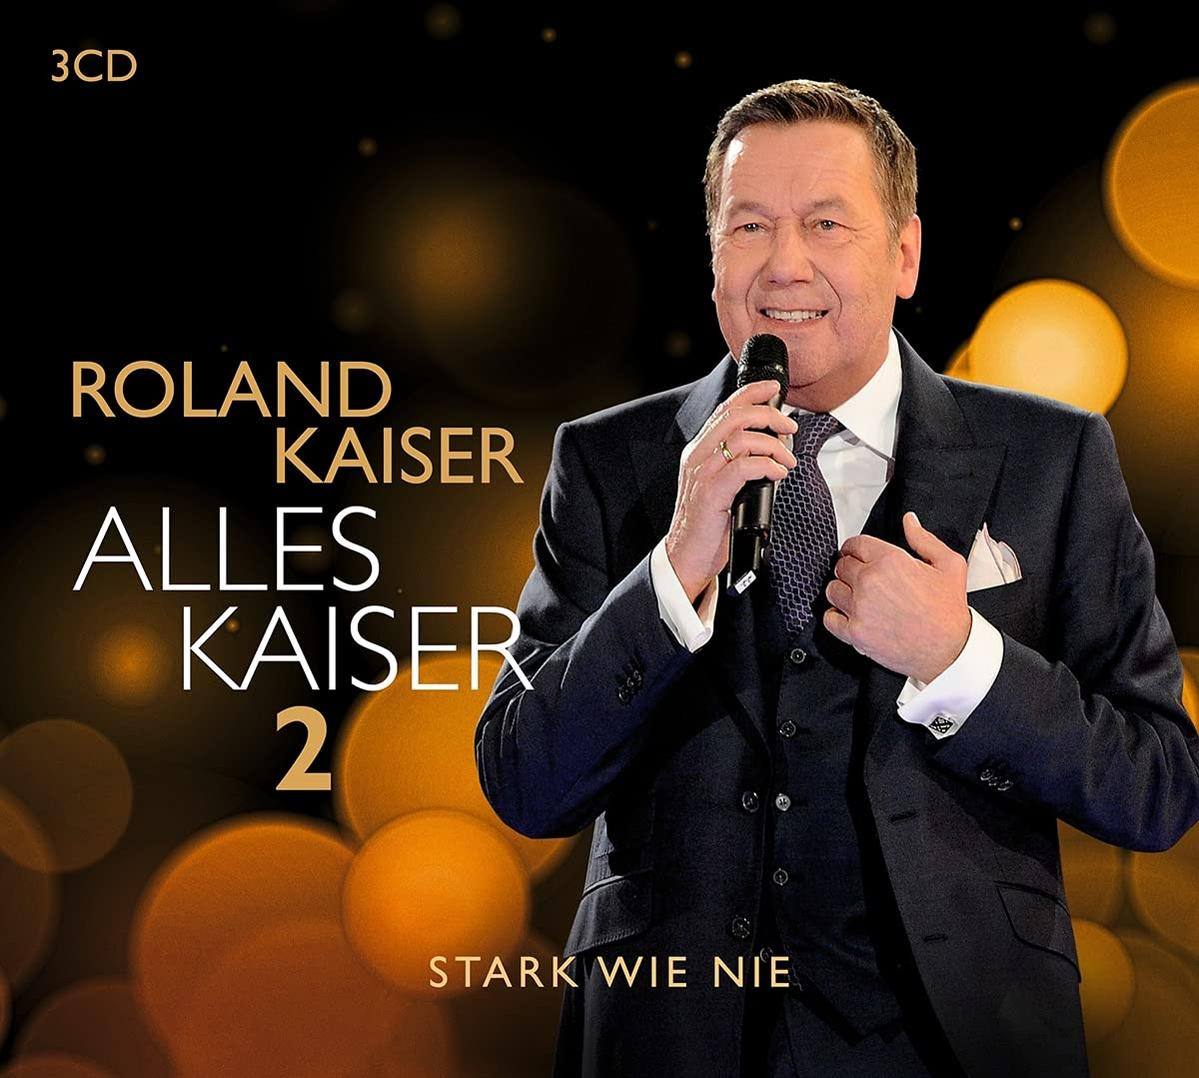 - (CD) Roland nie) - 2 (Stark Kaiser Alles wie Kaiser